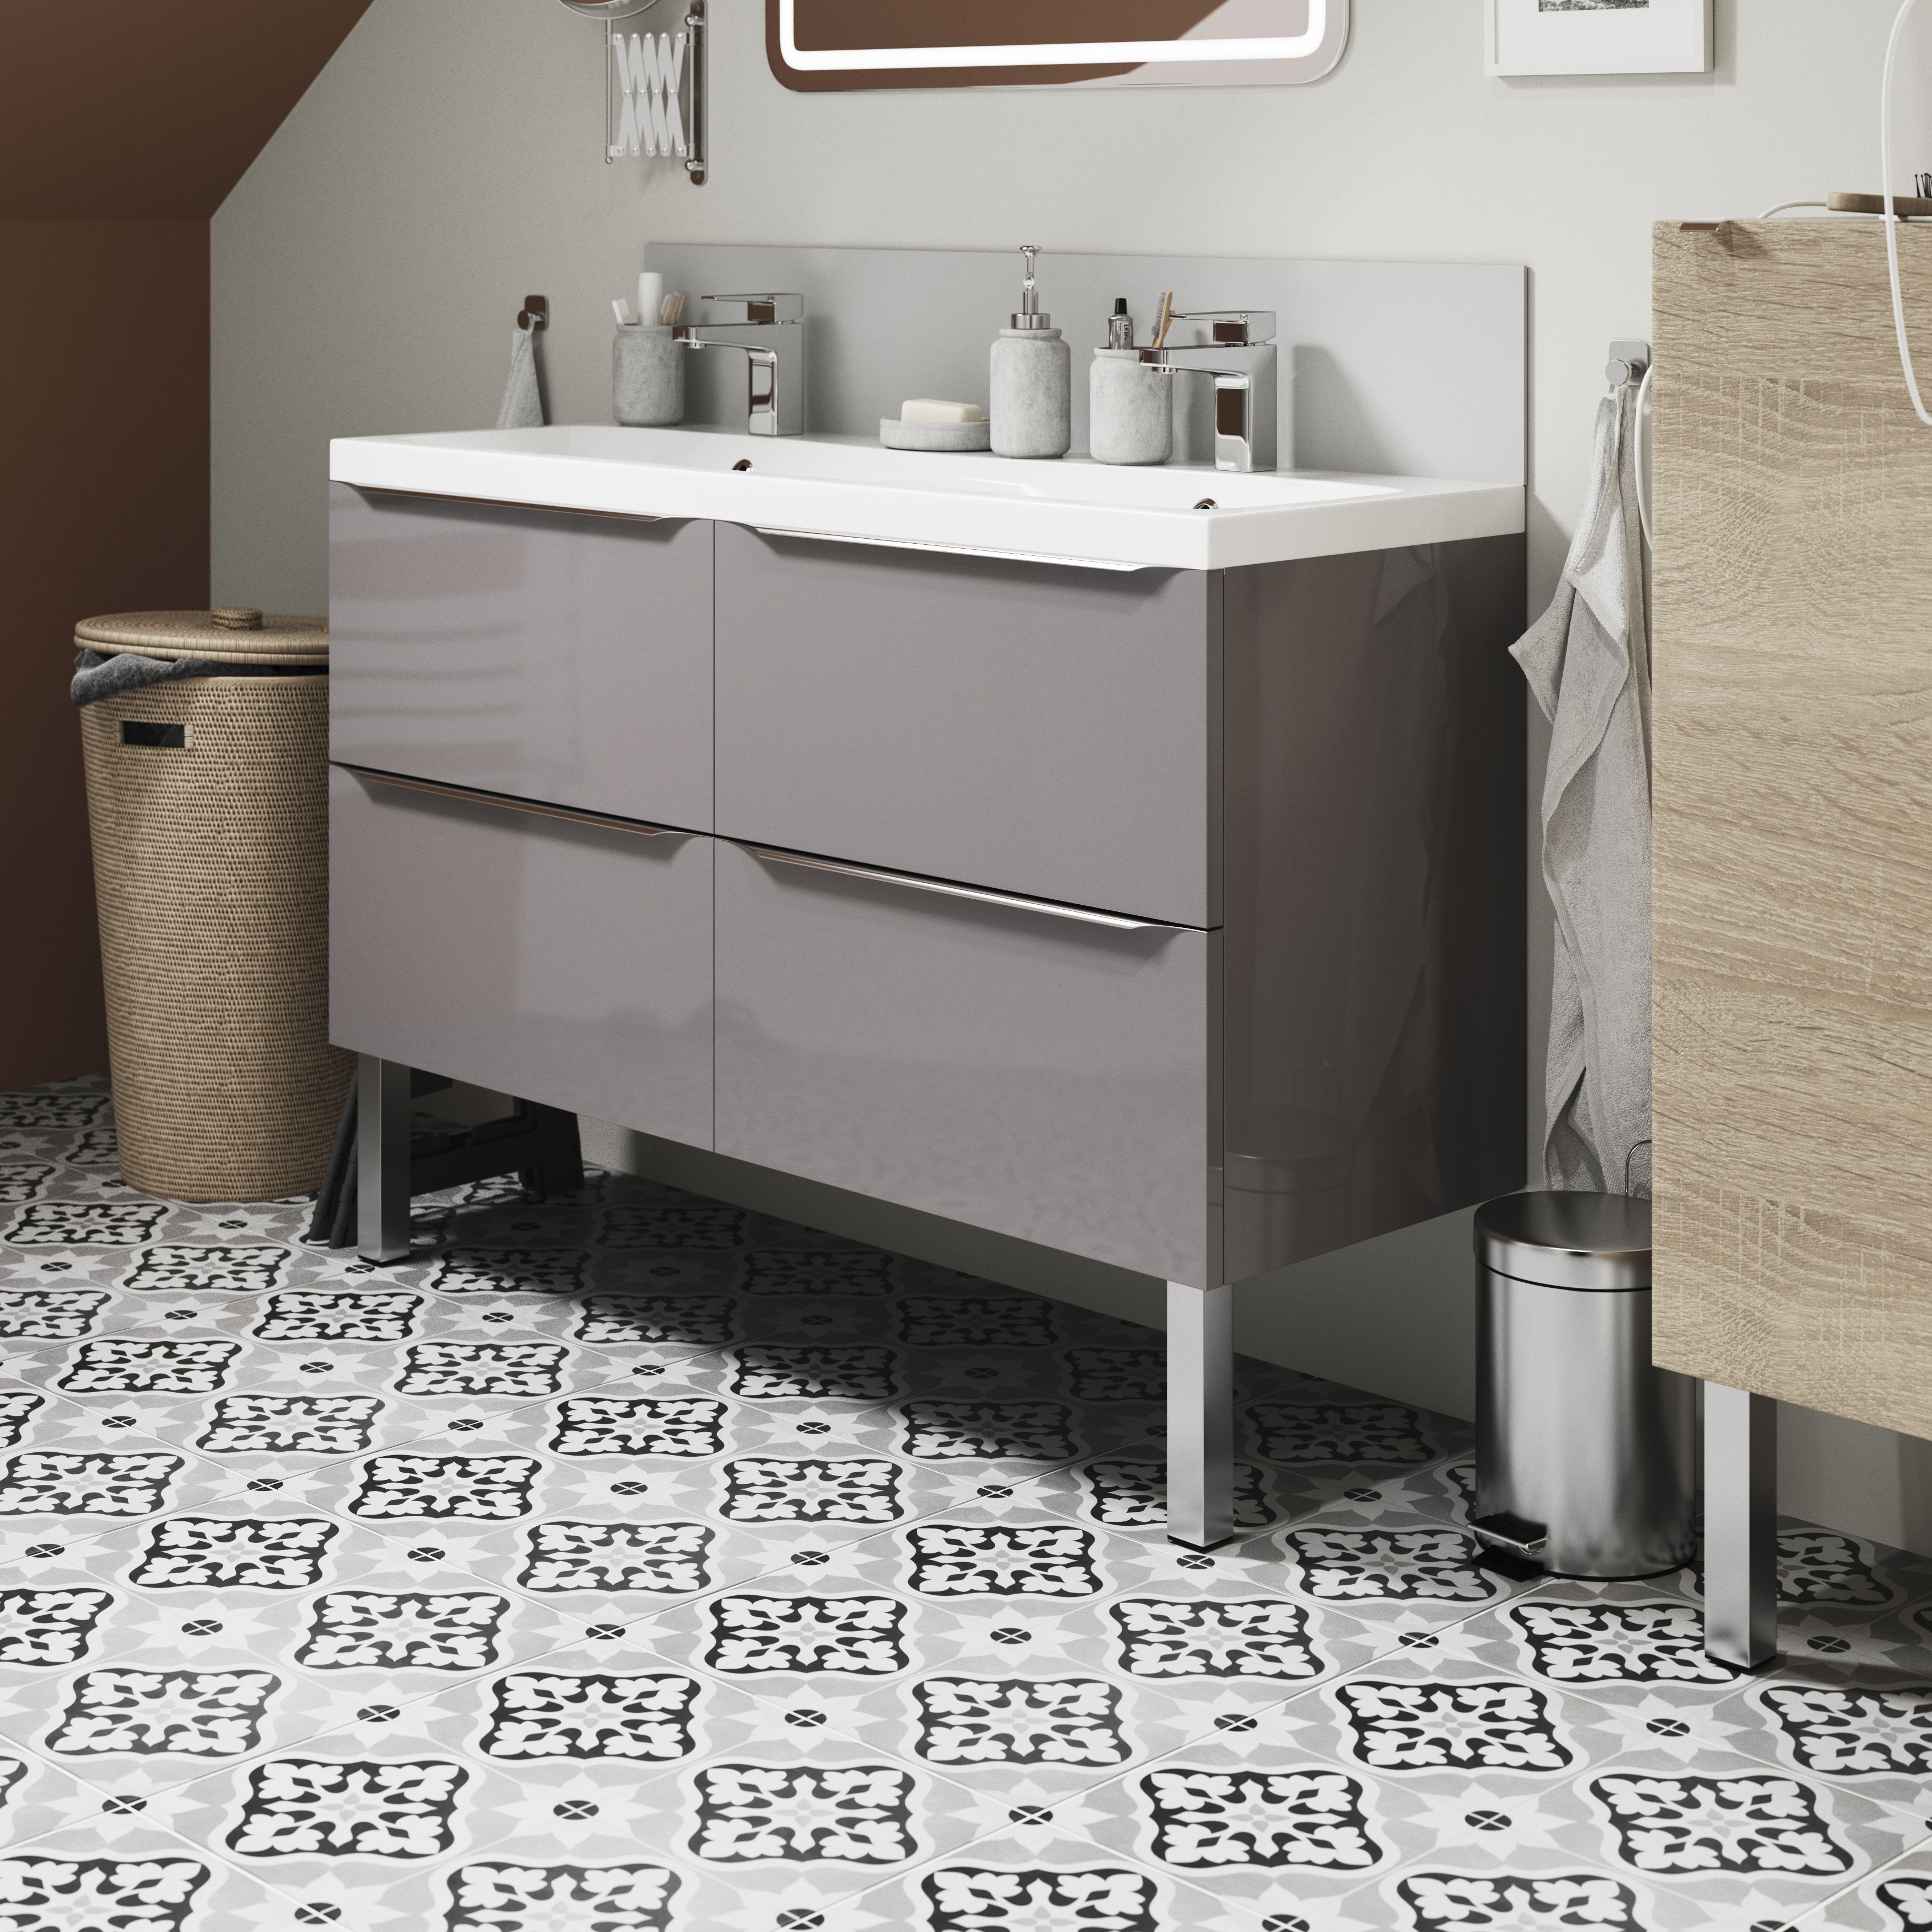 House of Mosaics Dagenham Grey & white Matt Patterned Porcelain Wall & floor Tile Sample